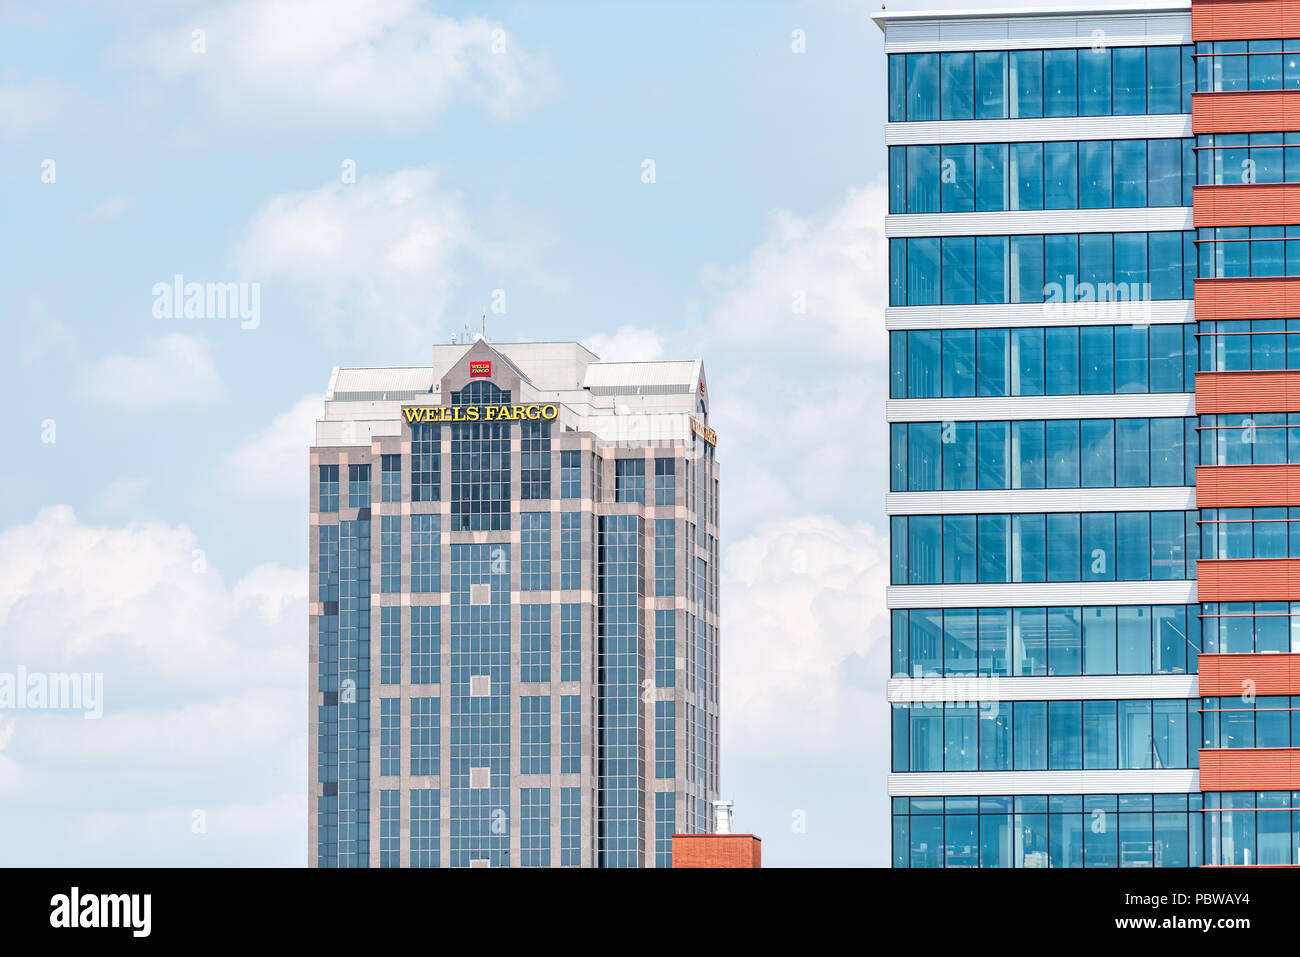 Raleigh, Stati Uniti d'America - 13 Maggio 2018: Downtown North Carolina città grattacieli, alberghi durante il giorno con edifici moderni, aziende, Wells Fargo Bank closeup Foto Stock